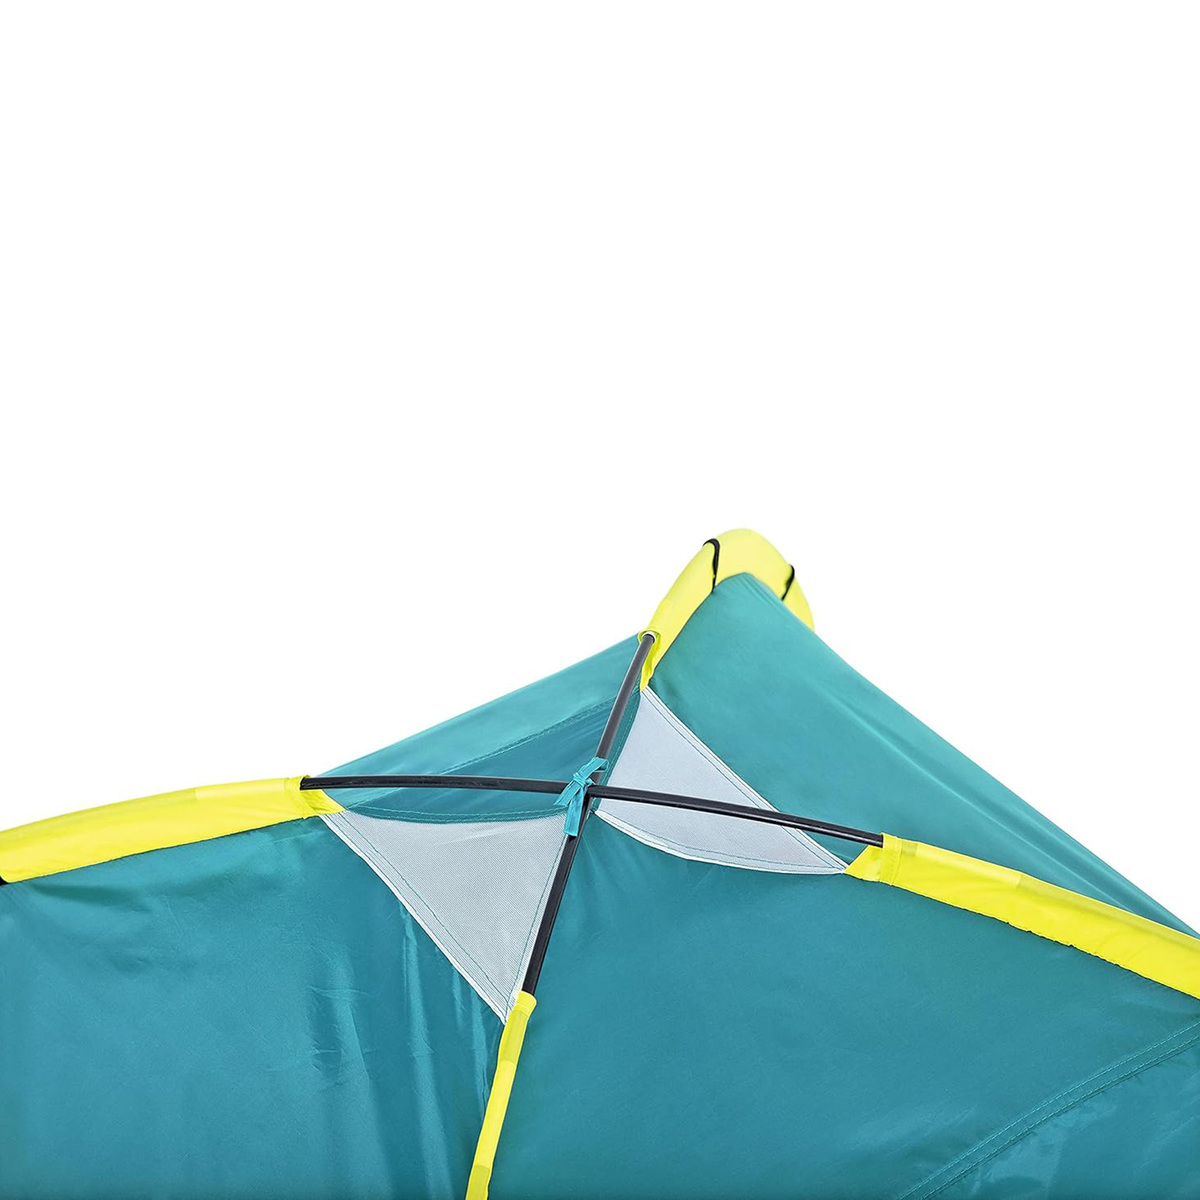 بيست واي خيمة بافيلو كولدوم تتسع لثلاثة أشخاص، 210 × 210 × 130 سم، 68085